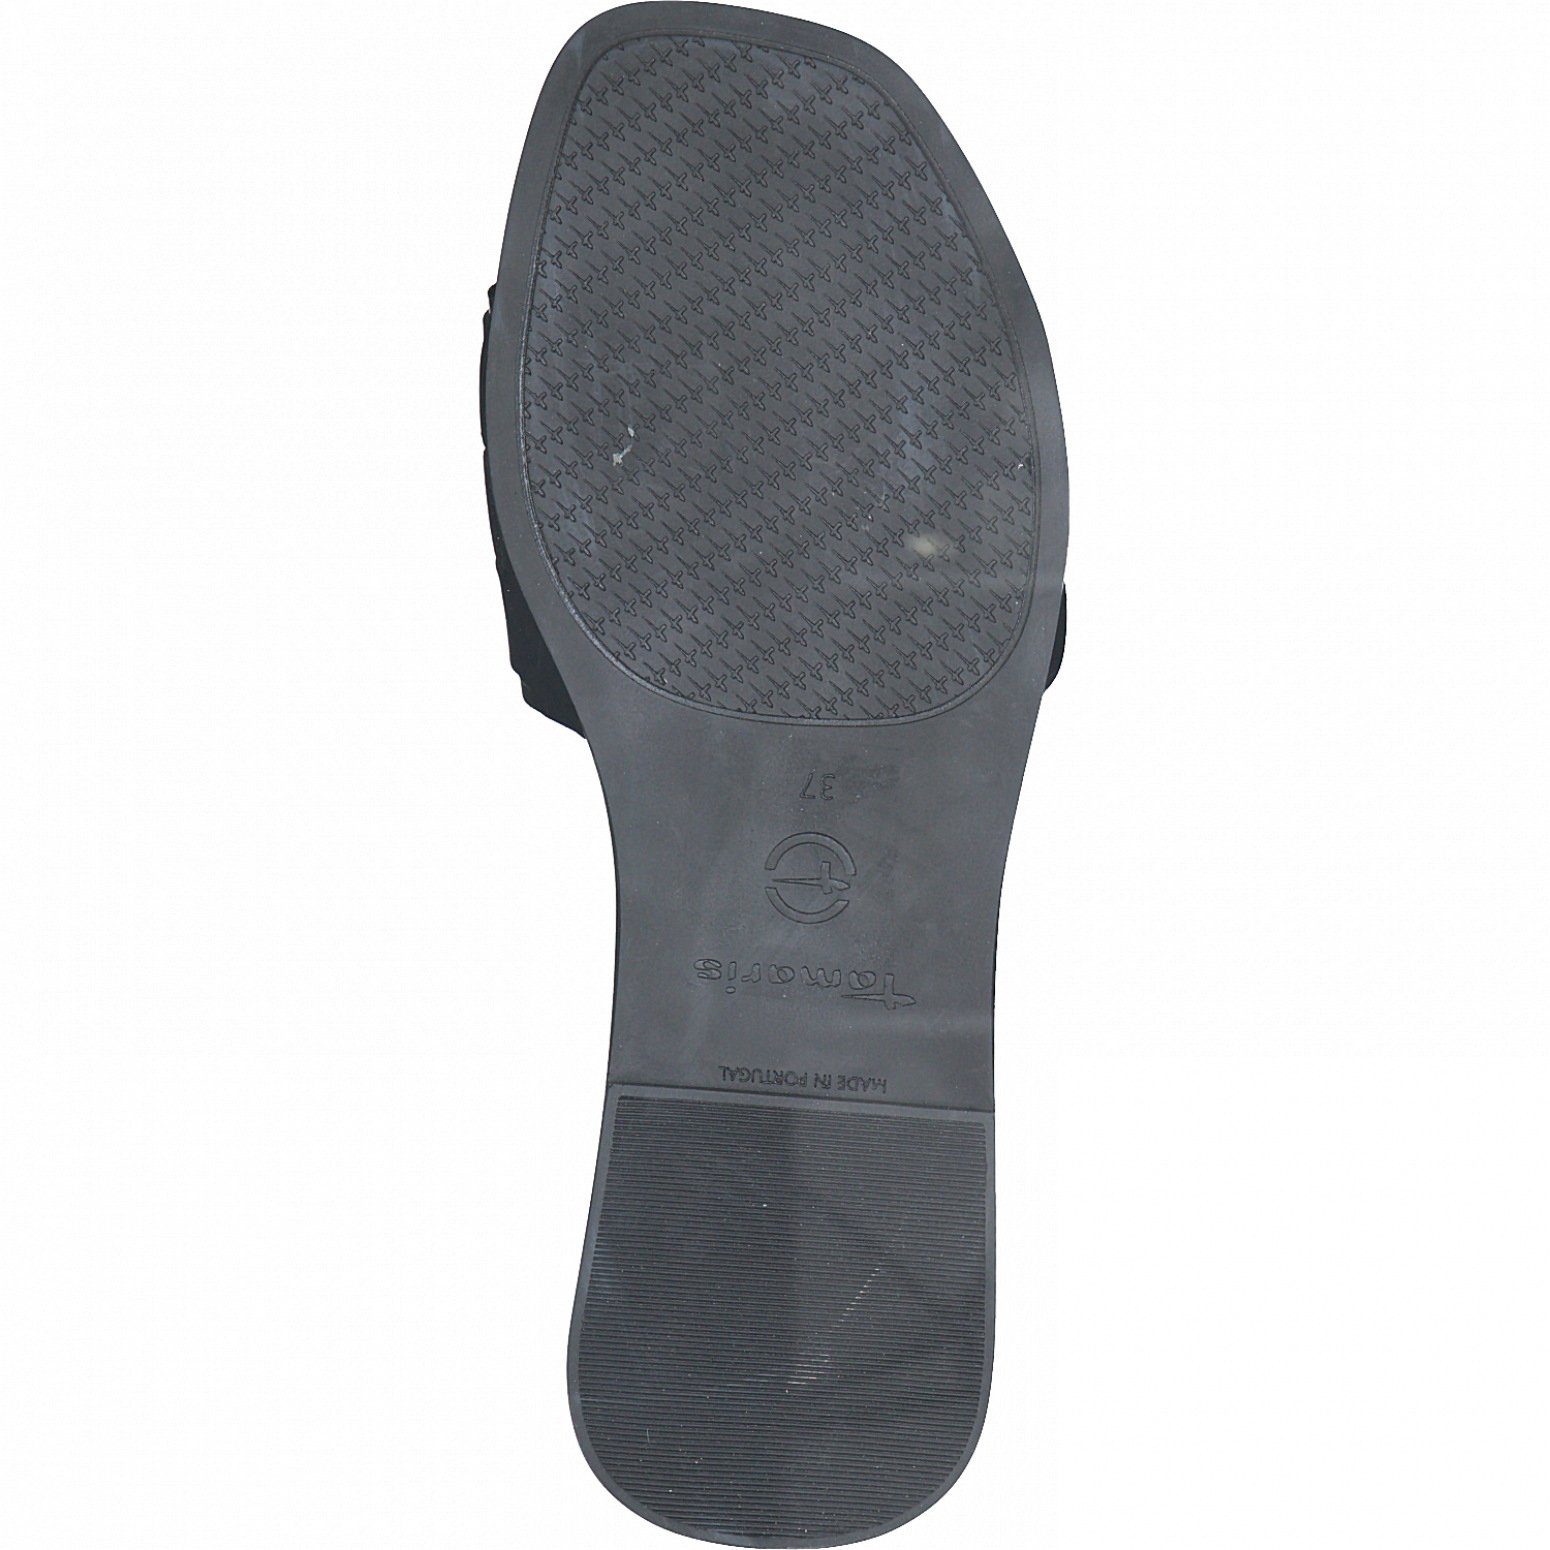 Leather 1-27122-28 Tamaris Black 003 Sandale